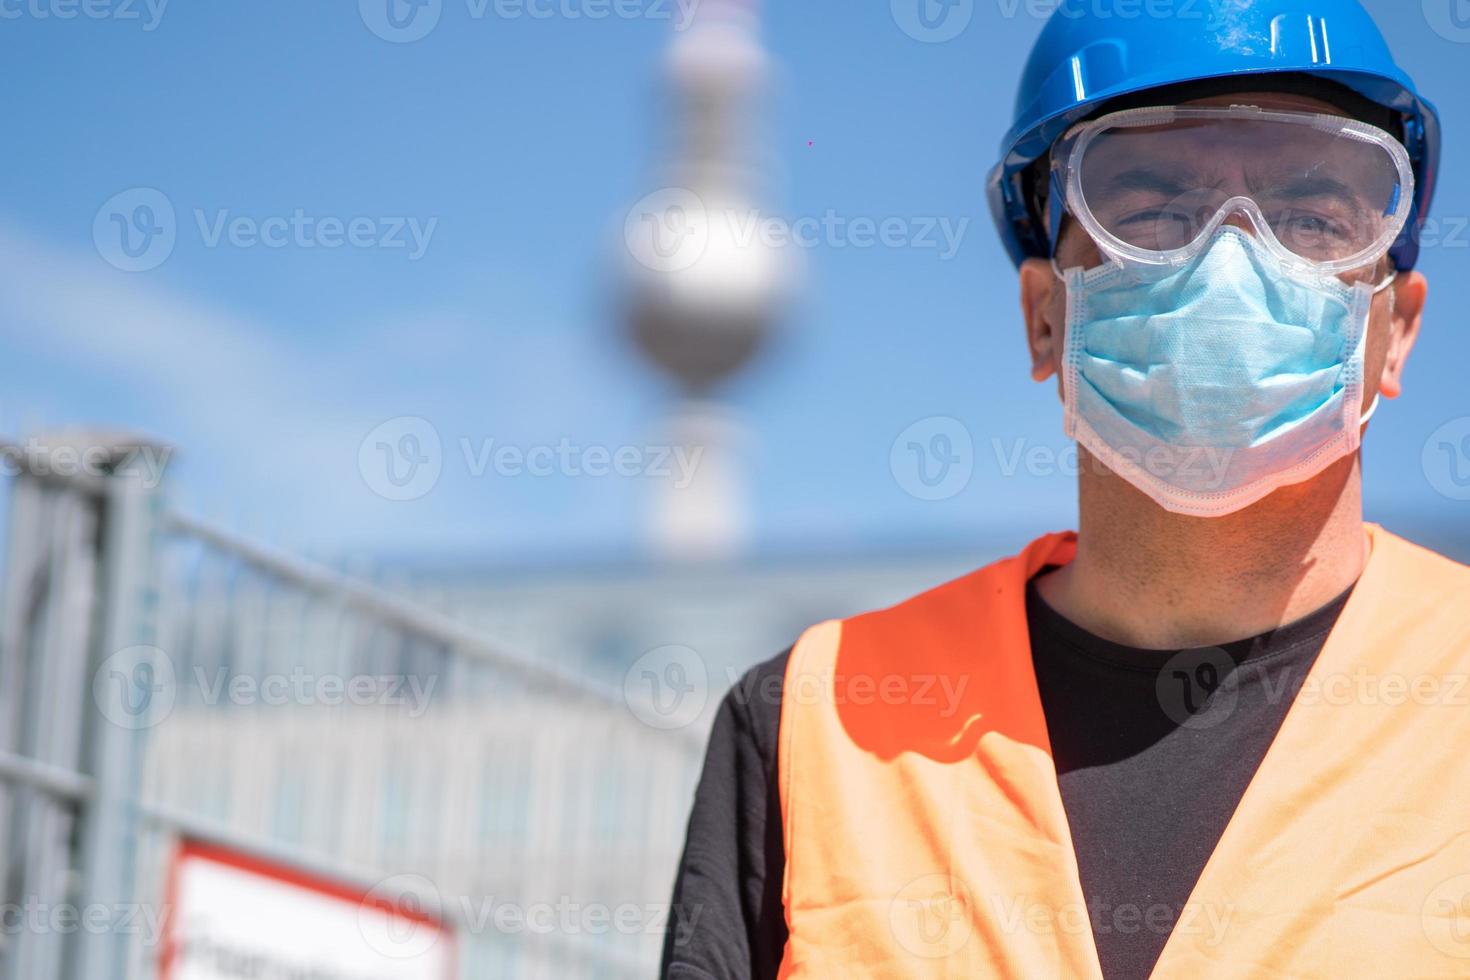 operaio edile che indossa elmetto blu, giubbotto riflettente e mascherina chirurgica protettiva foto